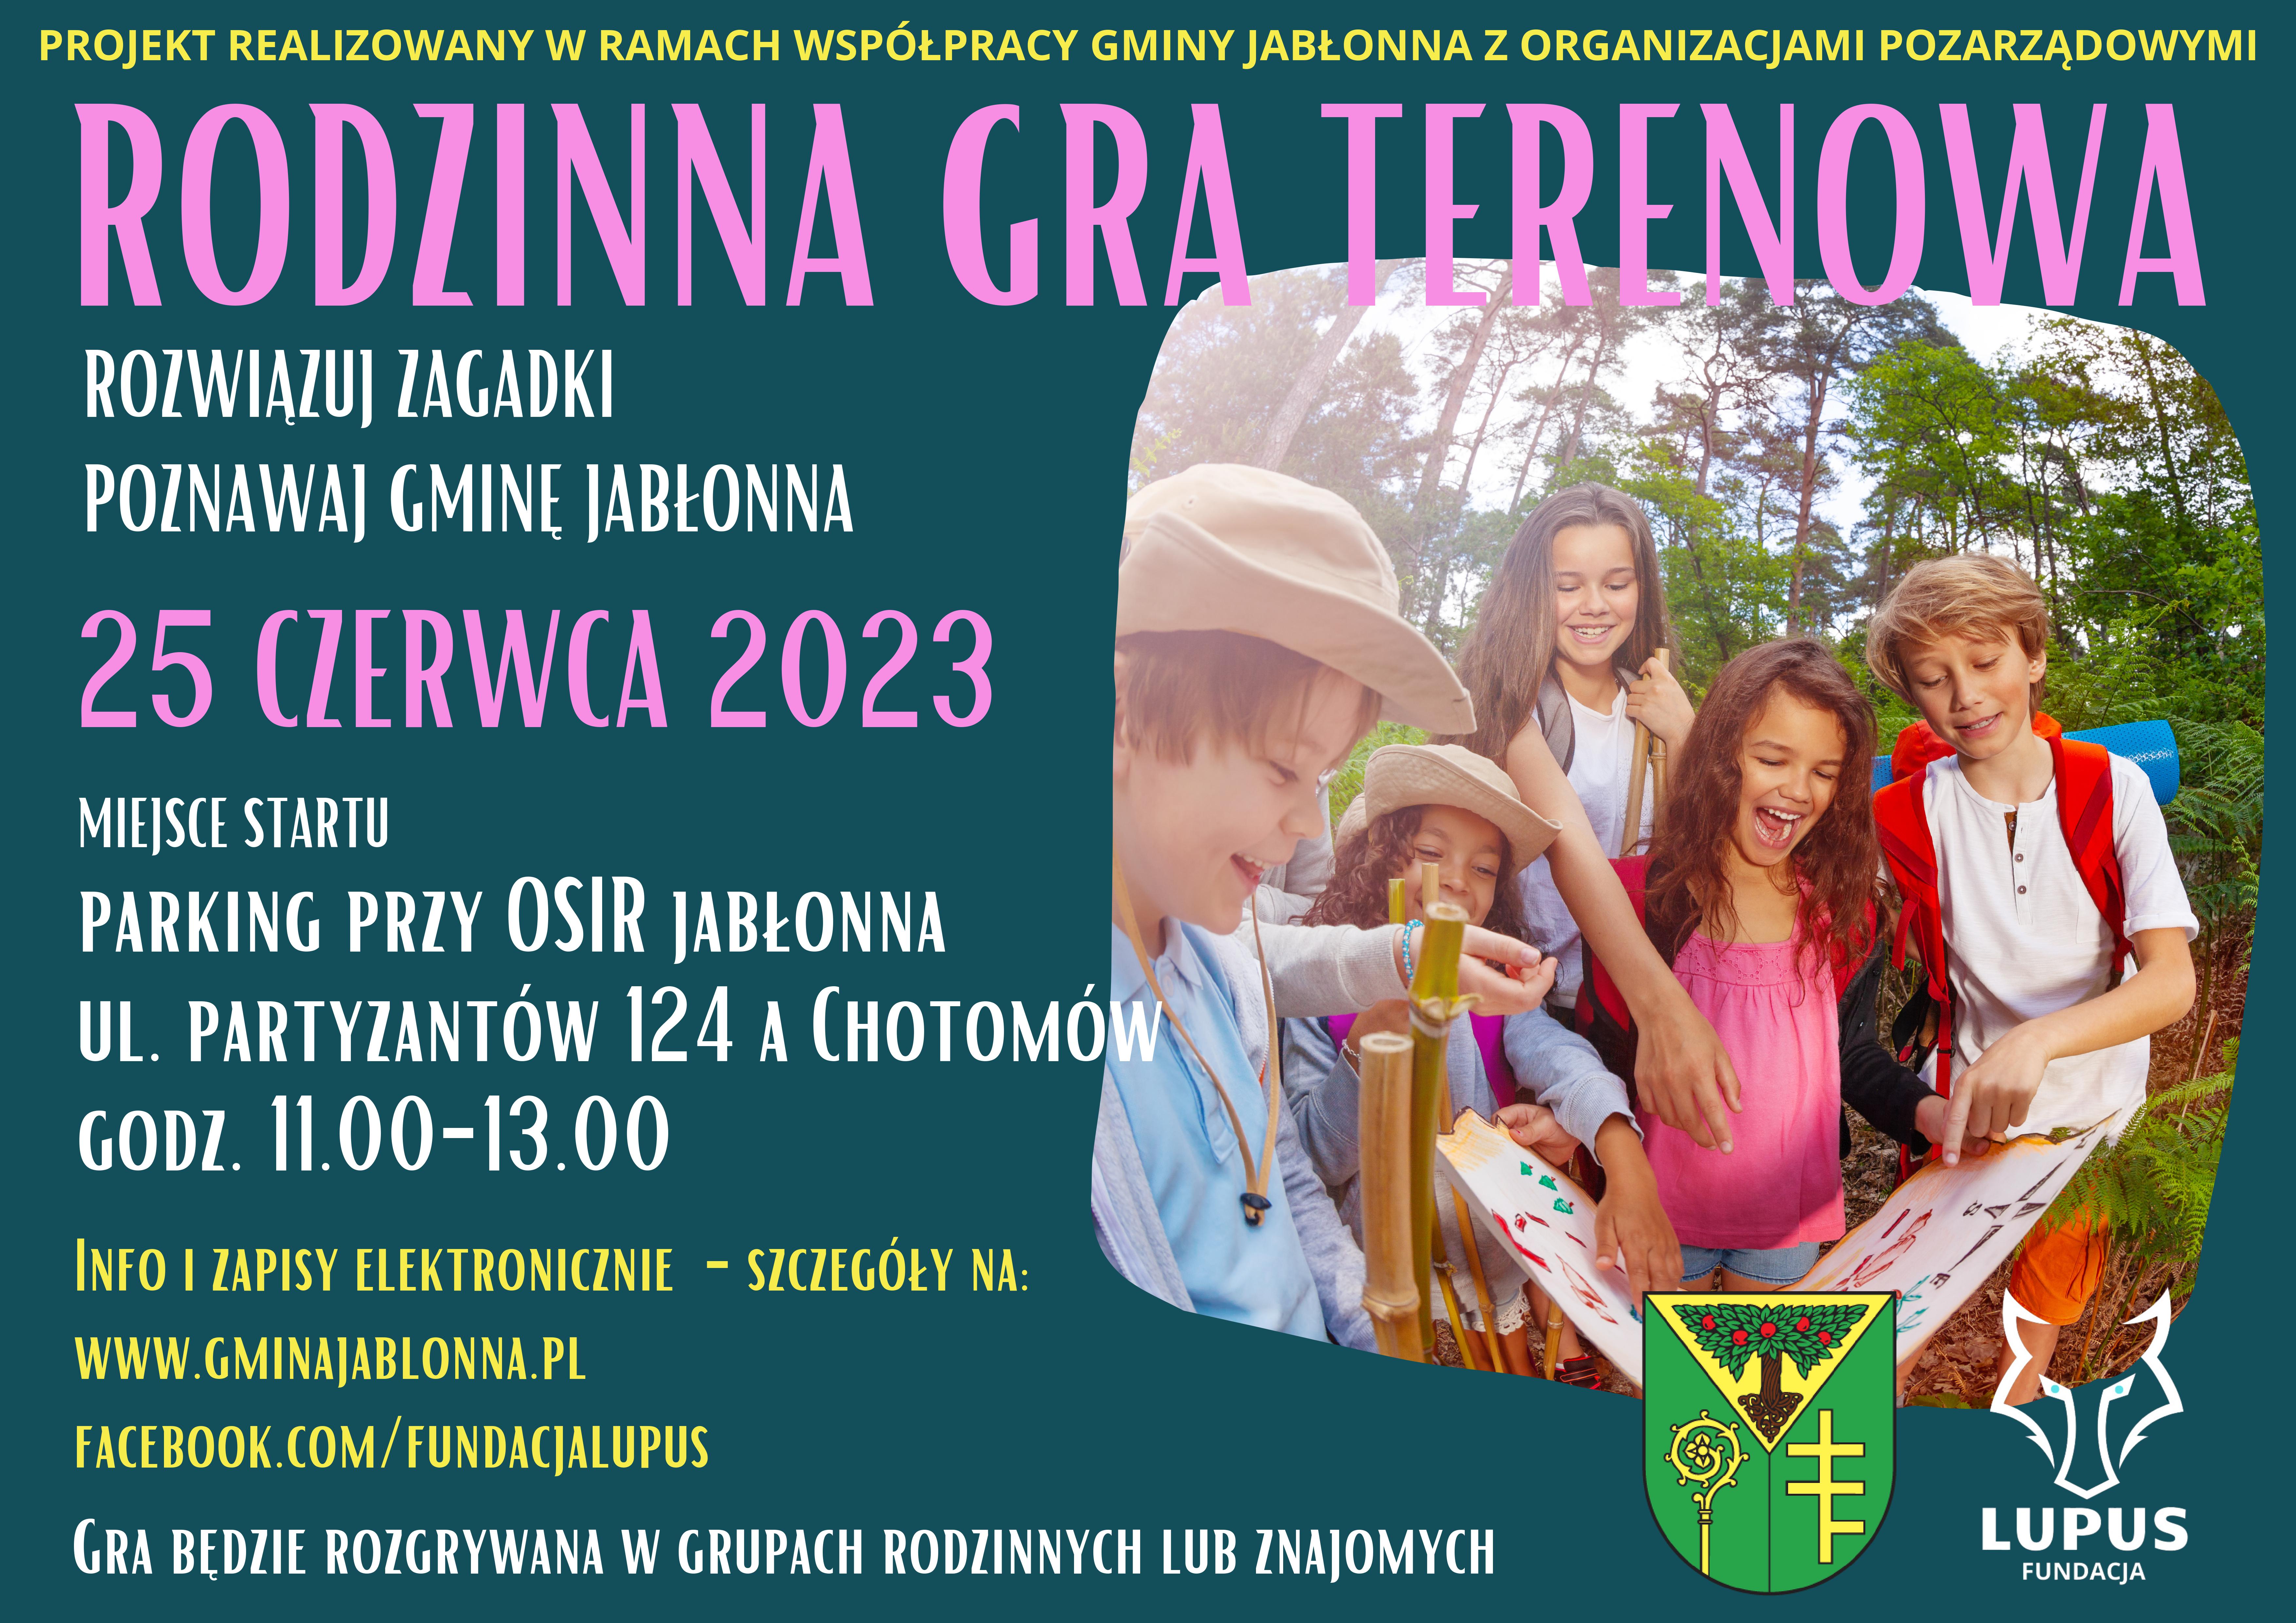 Plakat informujący o Rodzinnej grze terenowej w dniu 25 czerwca 2023 roku w godz. 11.00-13.00 w Lasach Chotomowskich